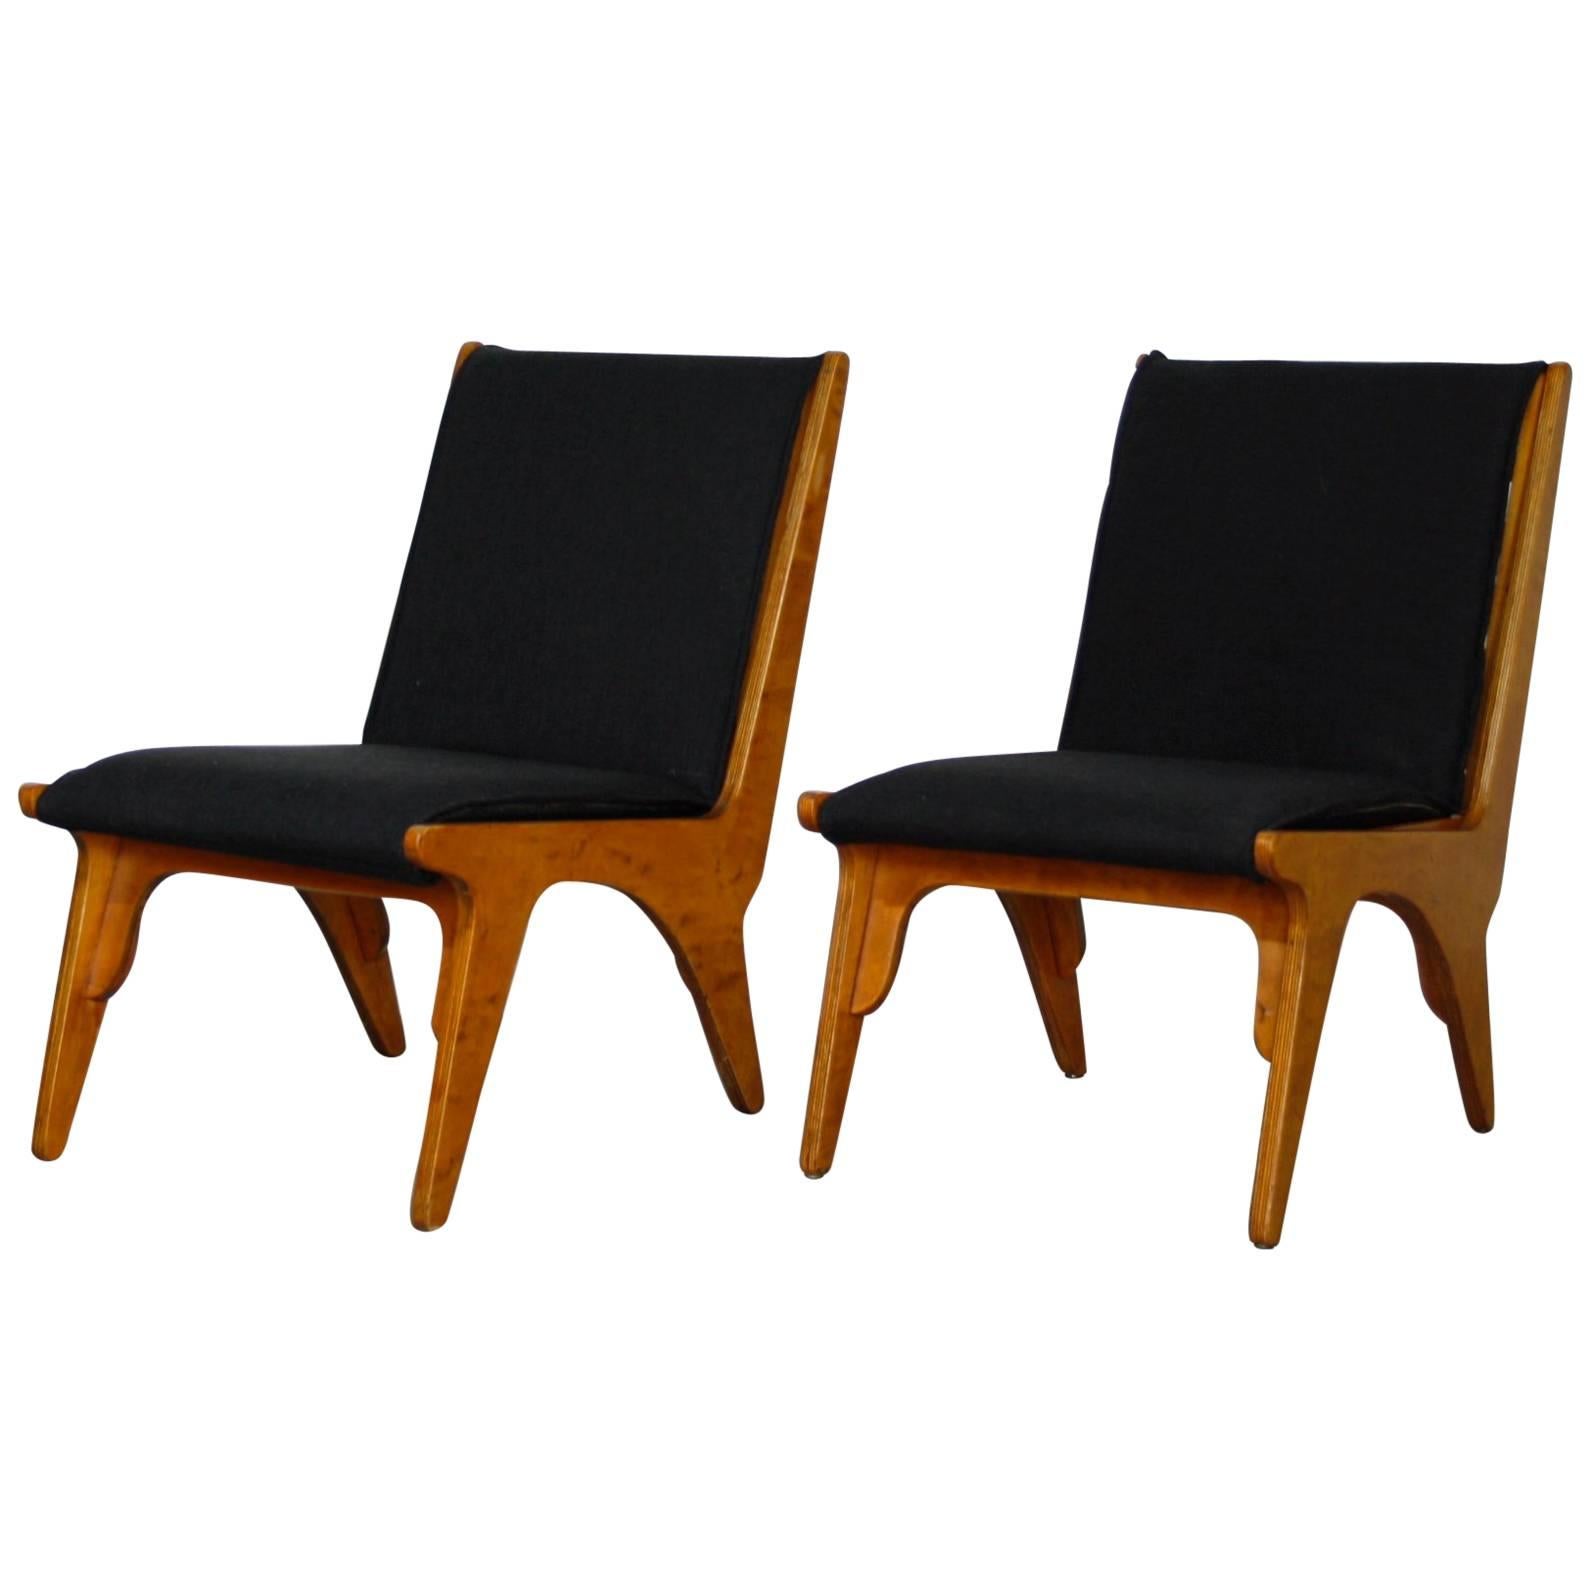 Pair of “Dordrecht” Lounge Chairs by W Van Gelderen for ’t Spectrum Dutch, 1951